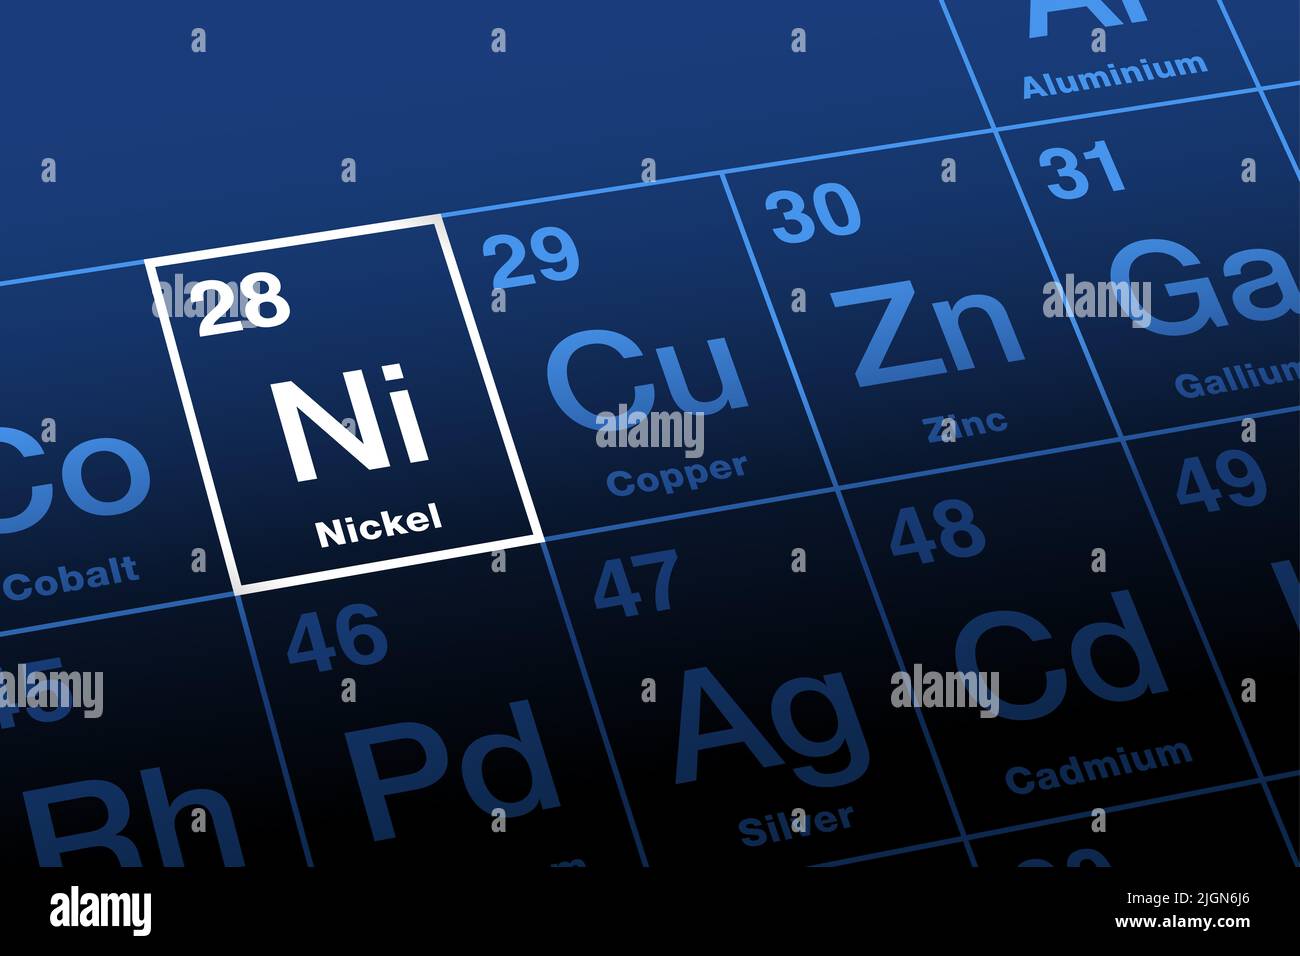 Nichel su tavola periodica degli elementi. Metallo di transizione ferromagnetico, con il simbolo di elemento Ni, e con il numero atomico 28. Foto Stock